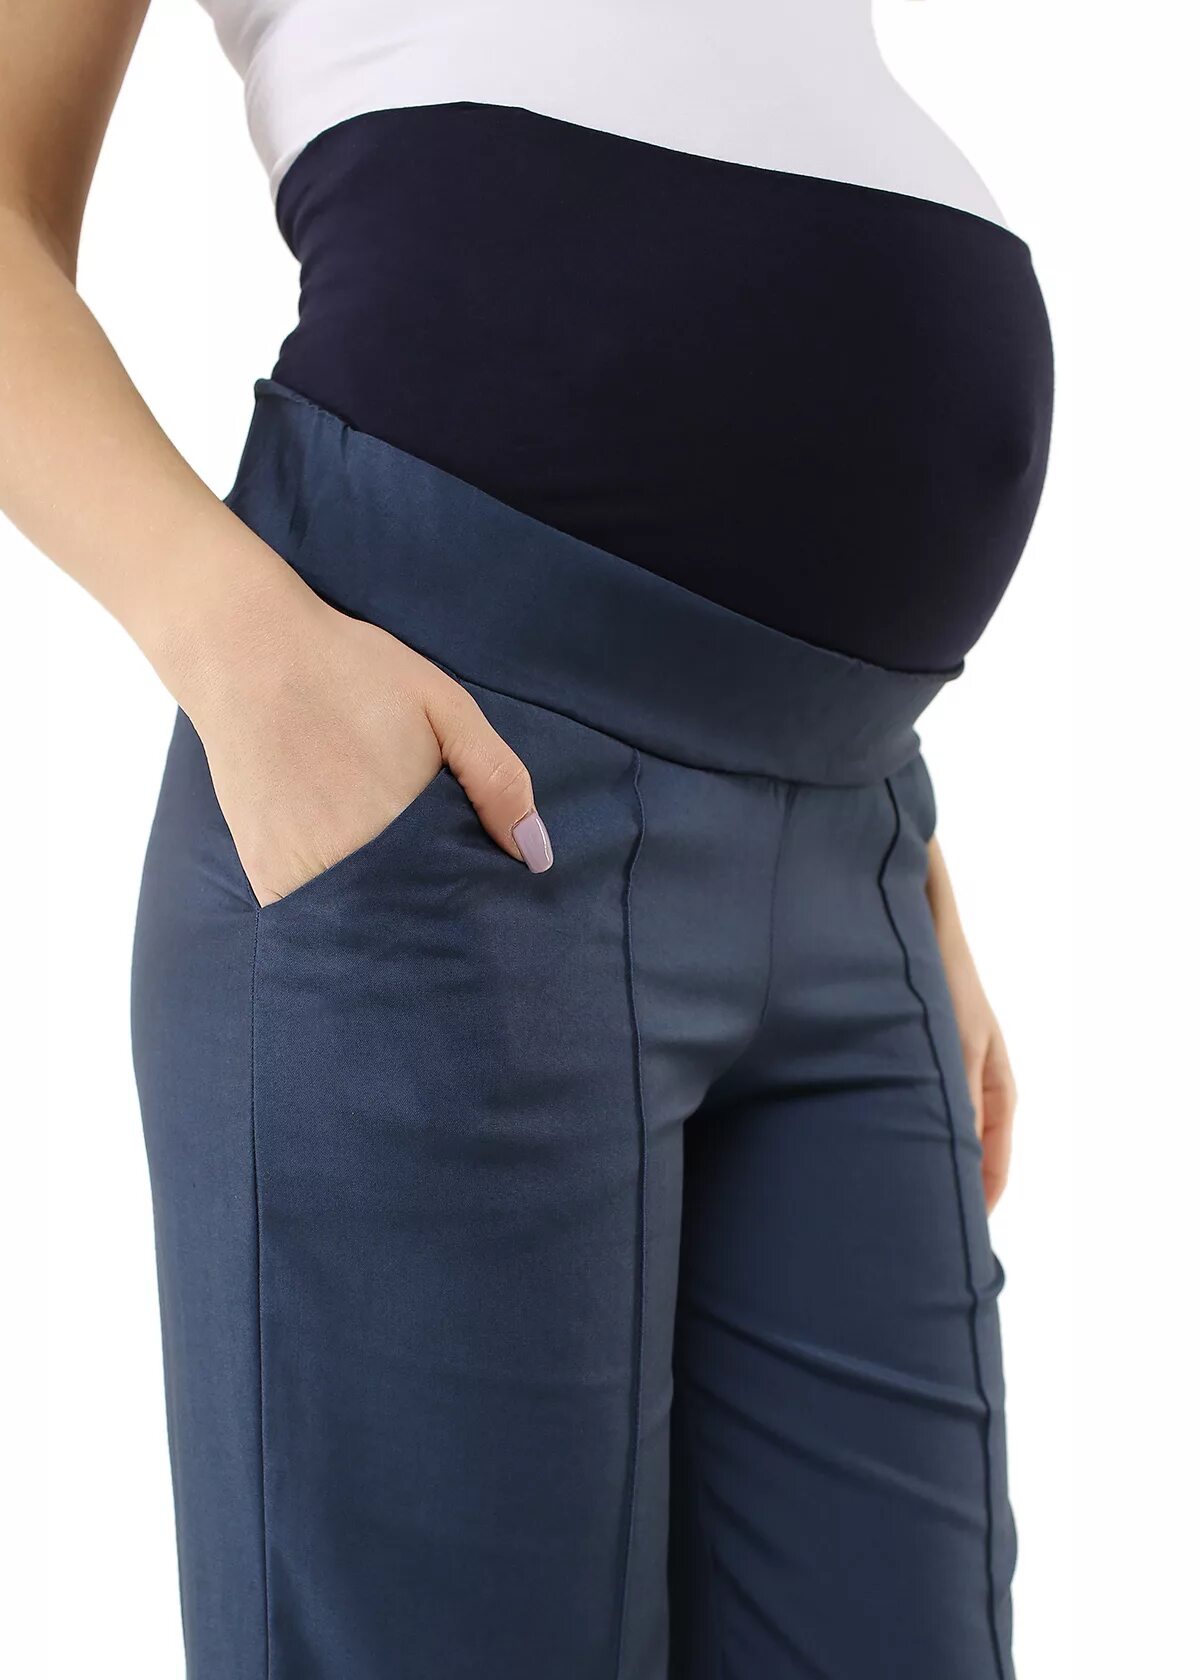 Штаны для беременных. Зимние штаны для беременных. Зимние брюки для беременных. Вставка для брюк для беременных. Купить штаны для беременных